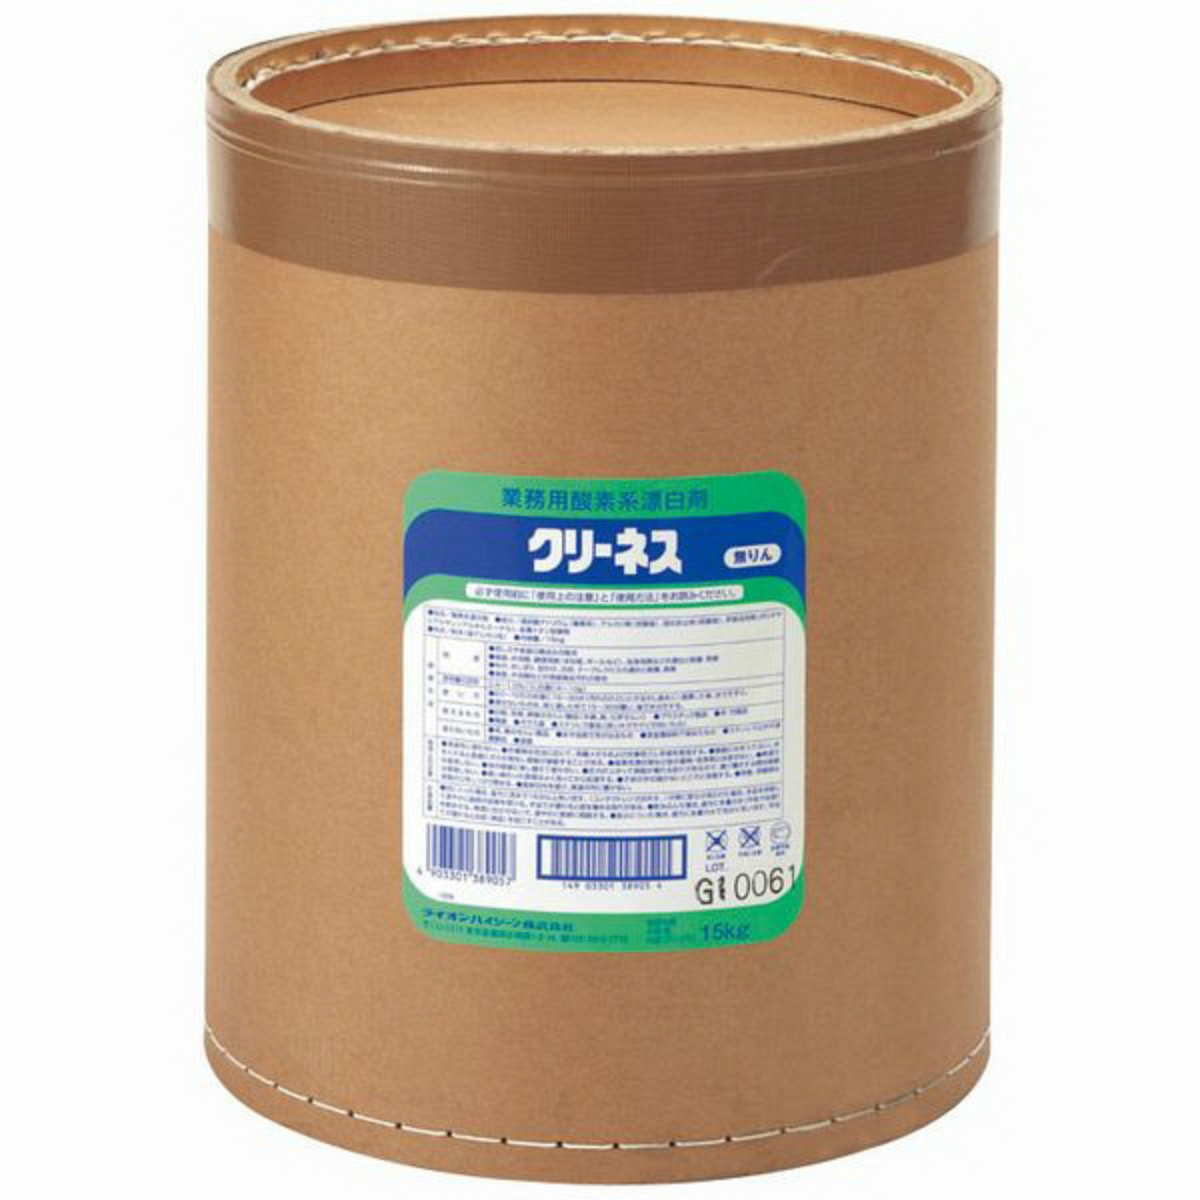 ライオン クリーネス(酸素系漂白剤) (2kg×6袋入) JSV6801 - 通販